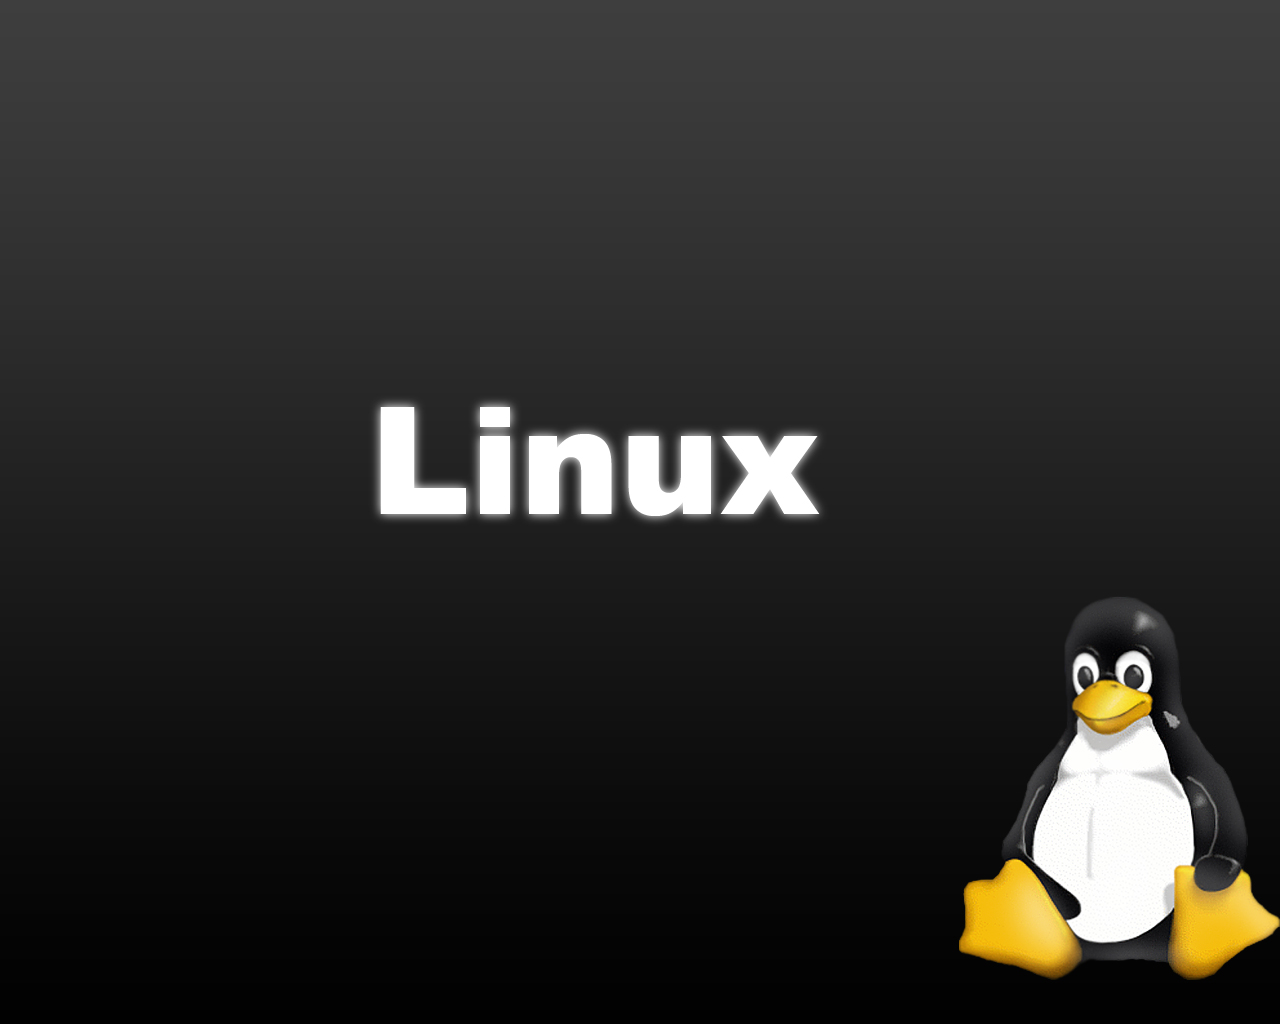 Linux Penguin - wallpaper.